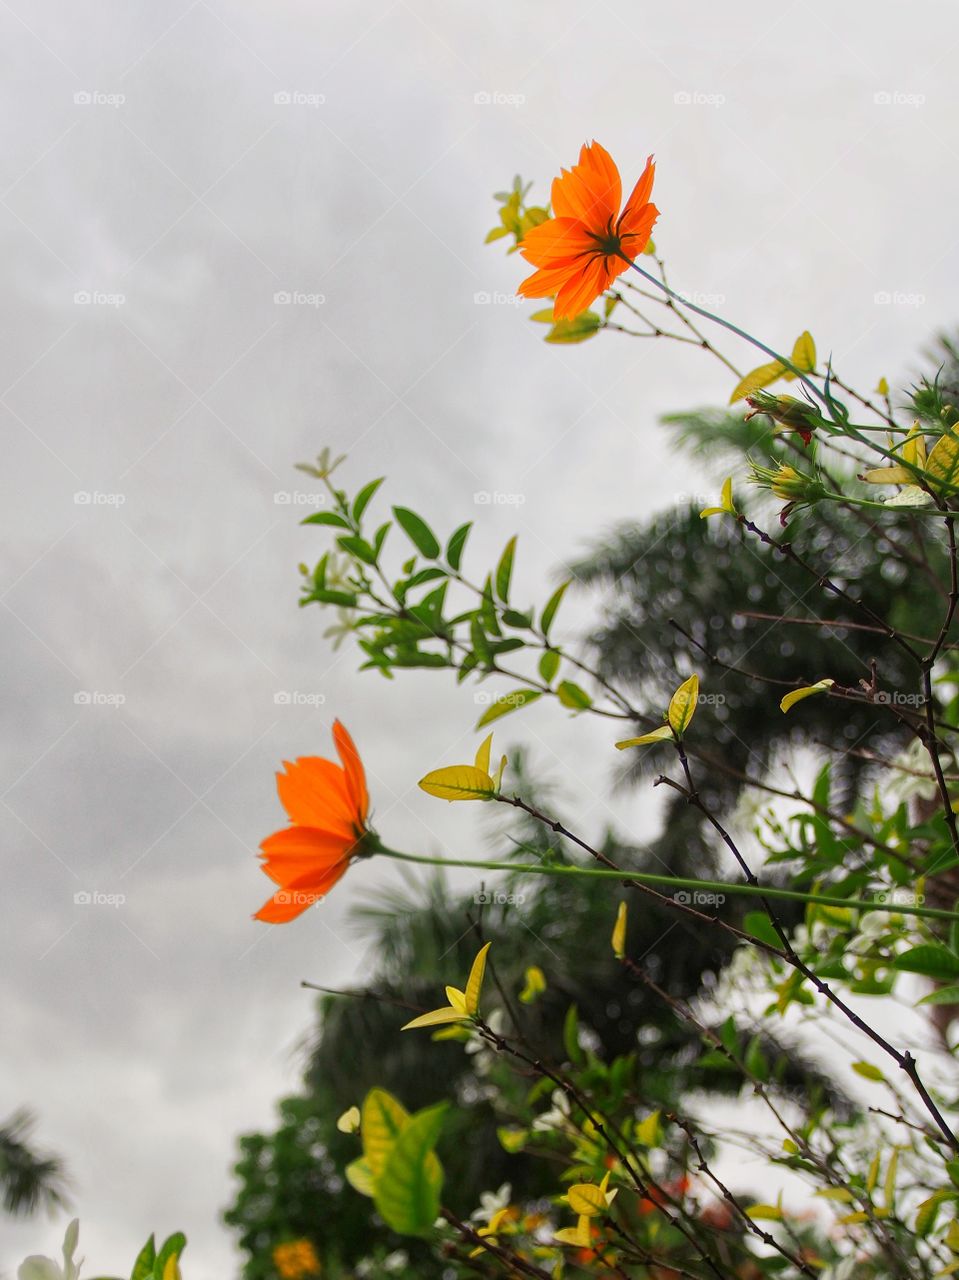 Two orange blossoms